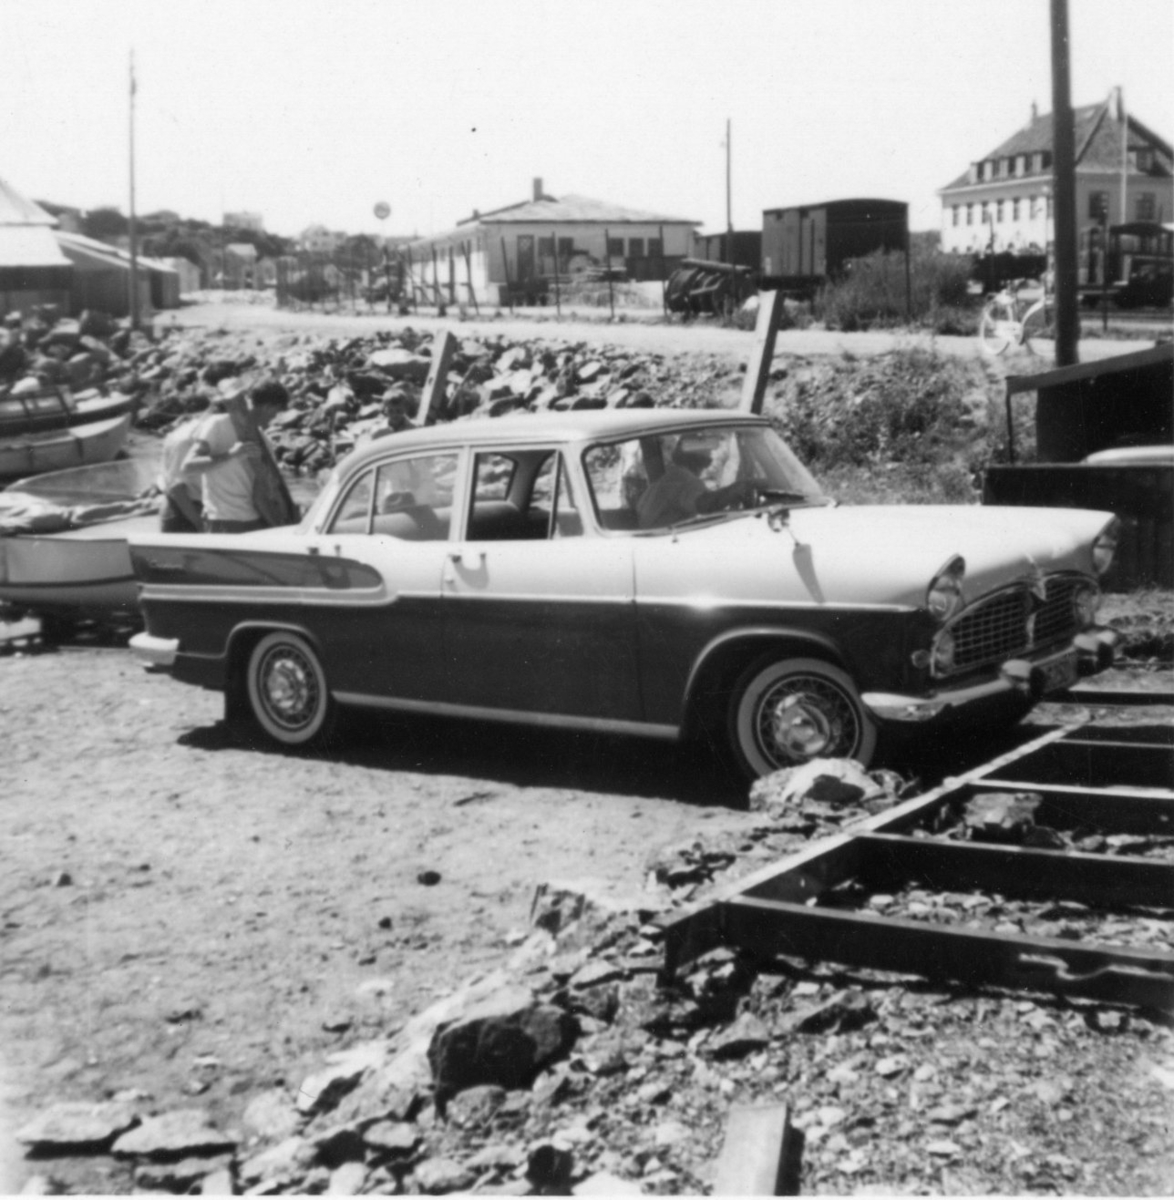 Bygging av jernbanen i Kragerø. Bil parkert ved Blindtarmen.
(Bilen er en franskbygd Simca Vedette Chambord, 1958-61-modell)